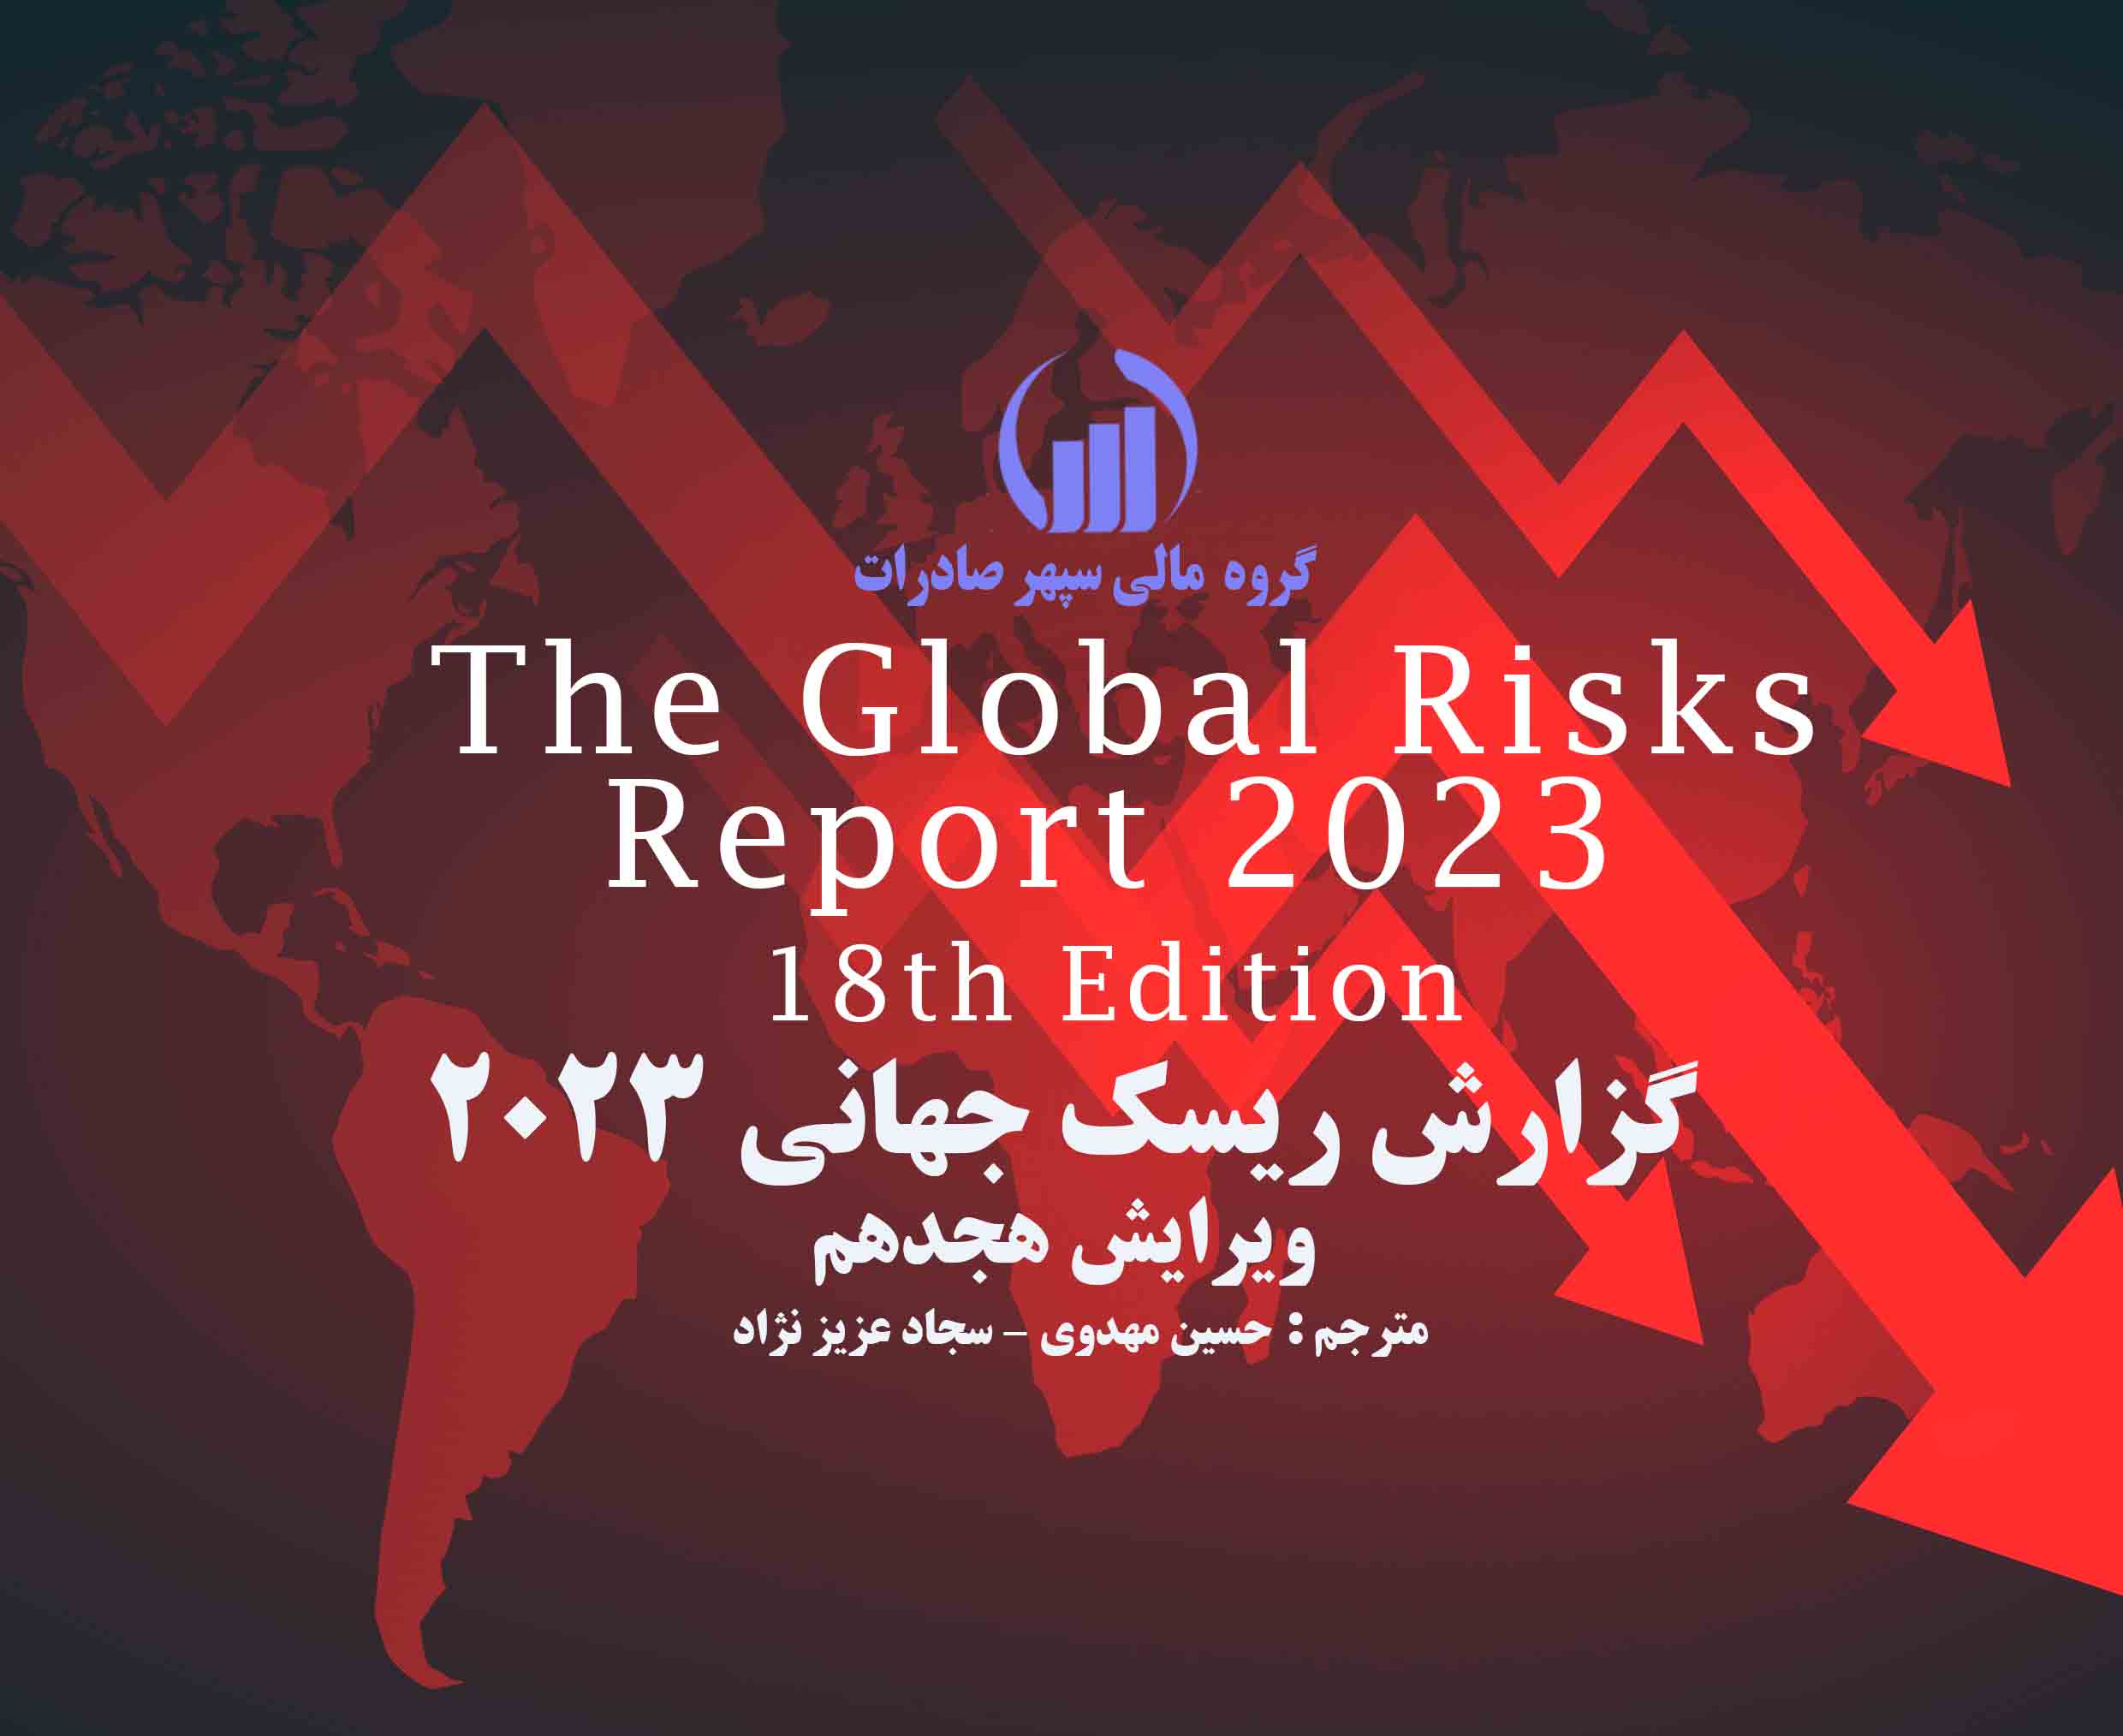  انتشارگزارش ریسک جهانی 2023 توسط گروه مالی سپهر صادرات